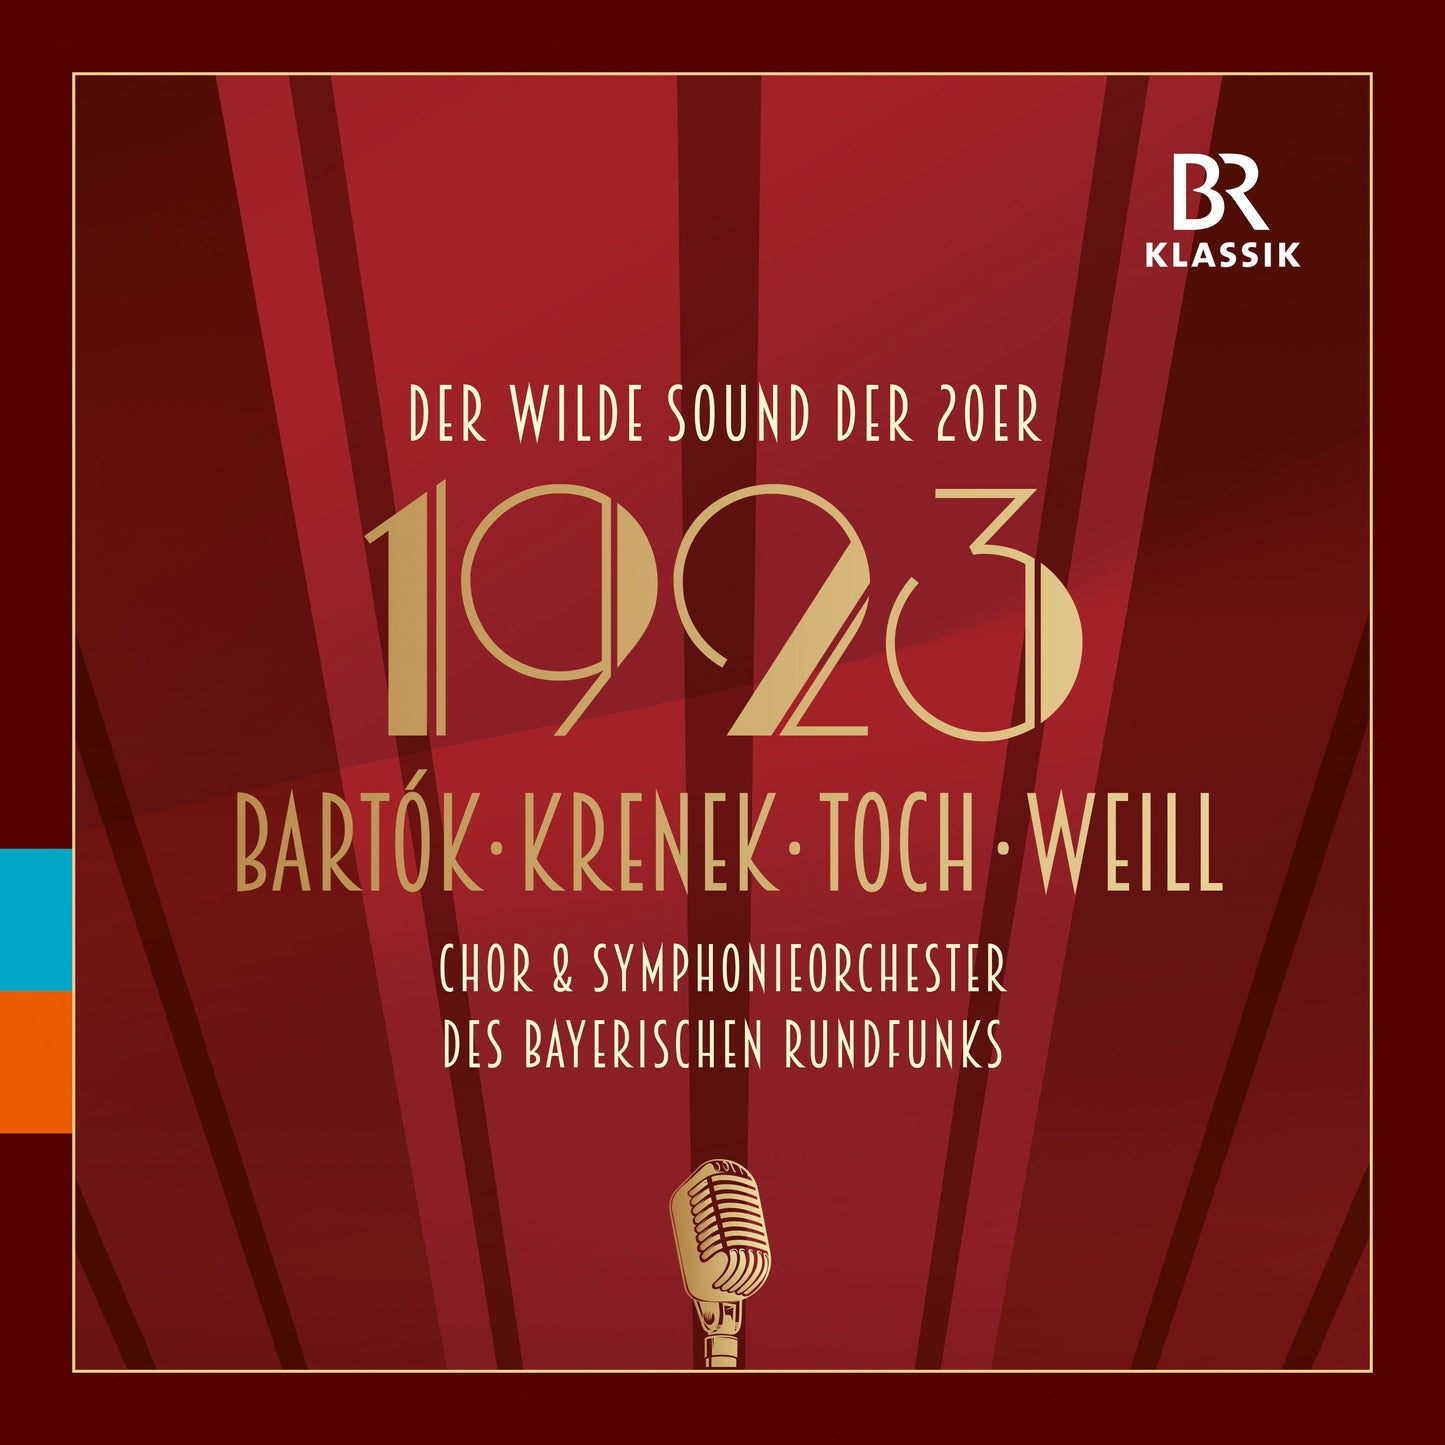 Toch, Weill, Krenek & Bartok: 1923